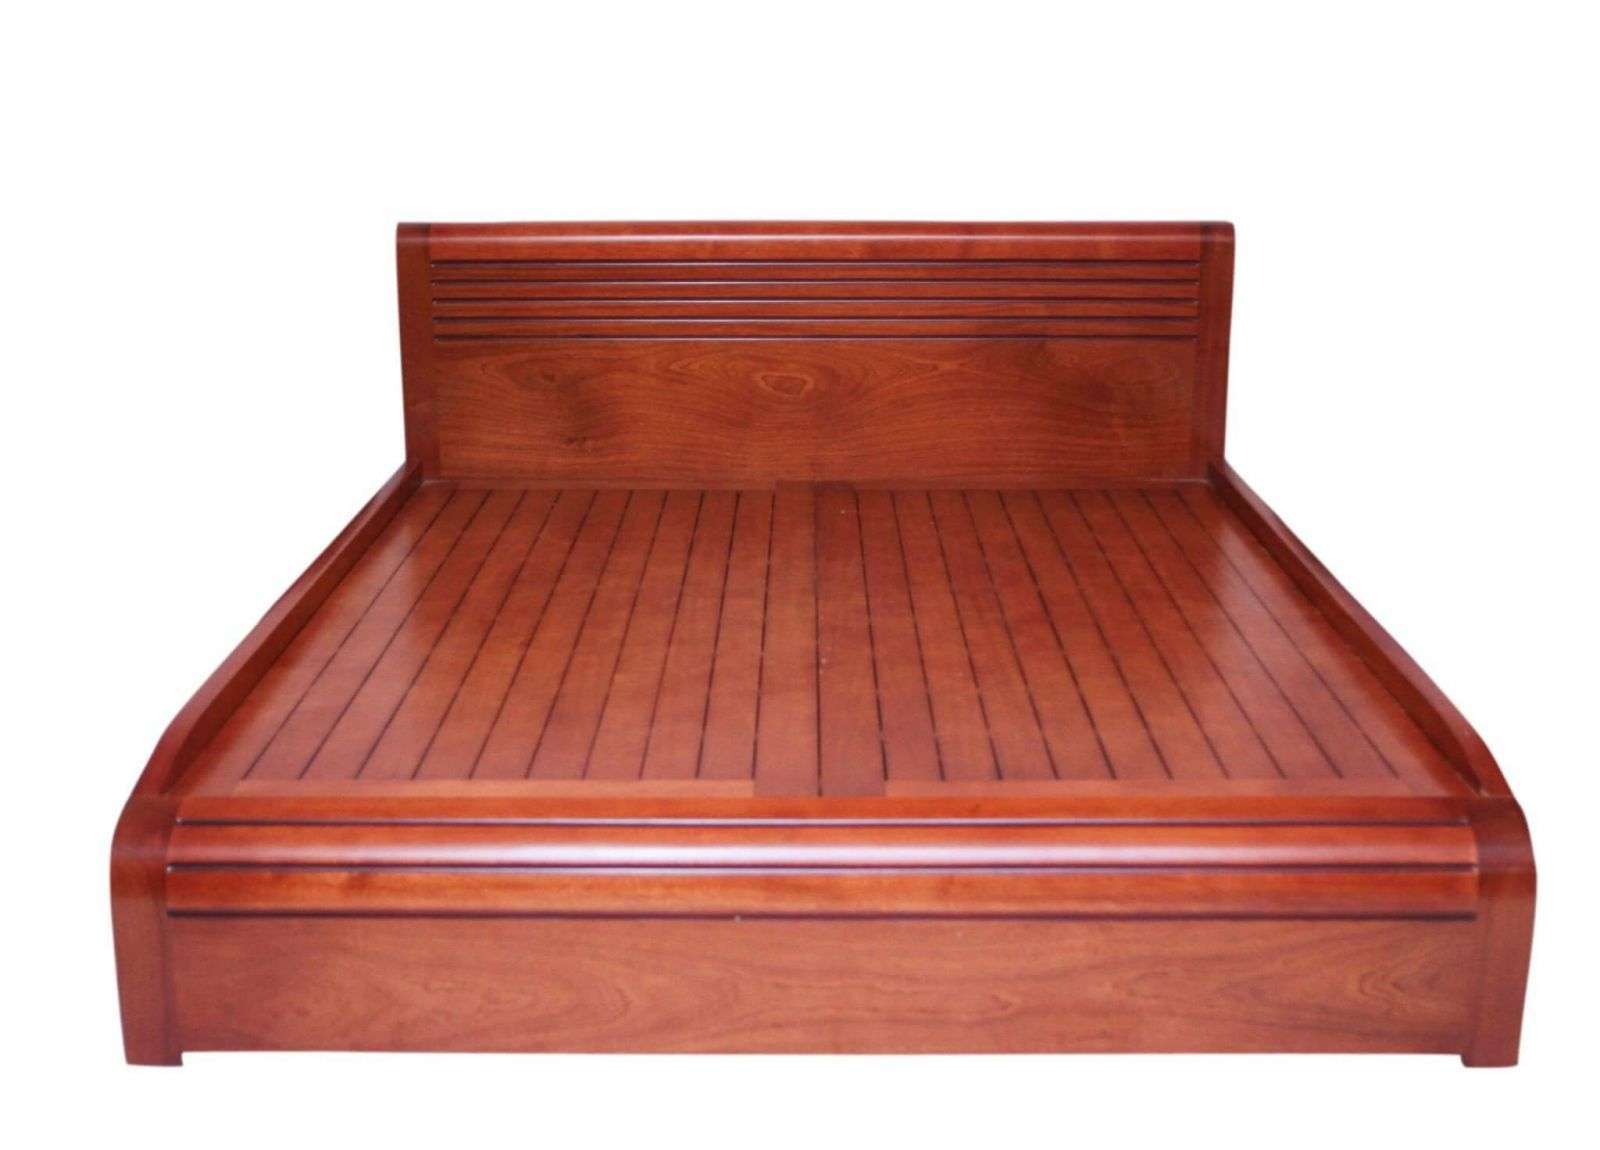 Giường gỗ giáng hương đỏ mang đến giấc ngủ thư thái và lịch lãm.